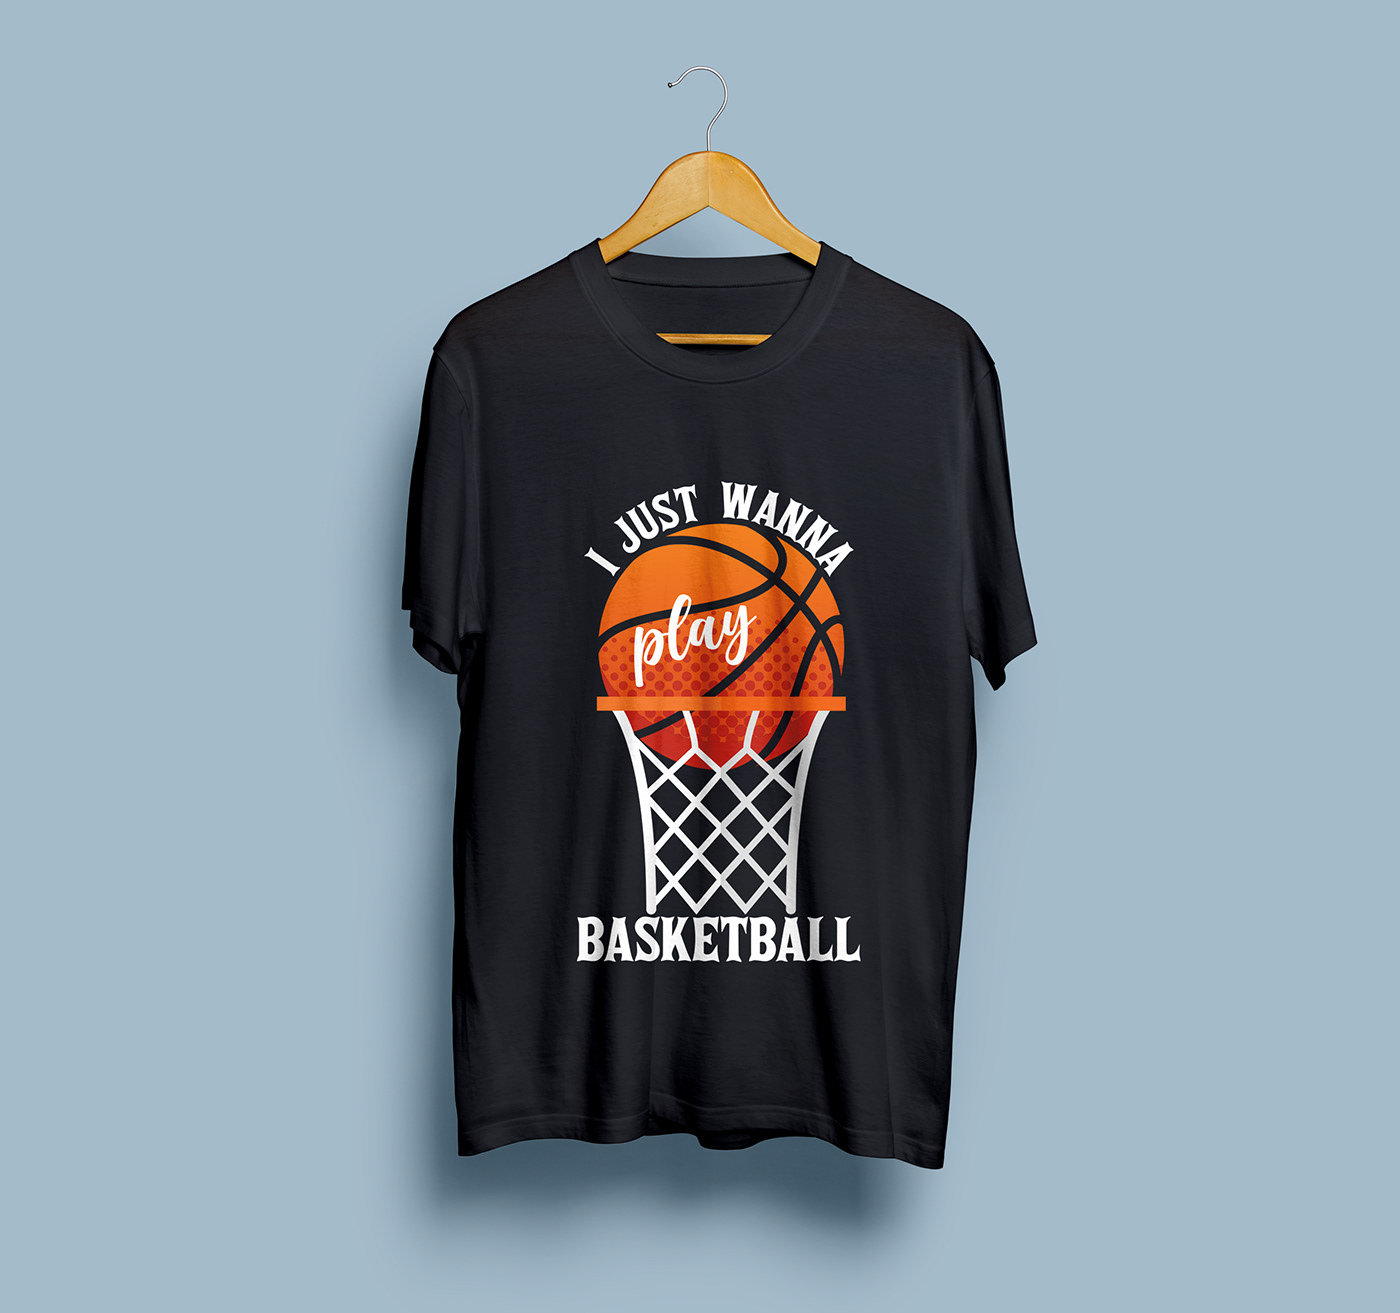 T-Shirt Design basketball Best T-shirt Design UNIQUE T-SHIRT DESIGN boys t-shirt gaming t-shirt design basketball lover t-shirt basketball t-shirt Player t-shirt